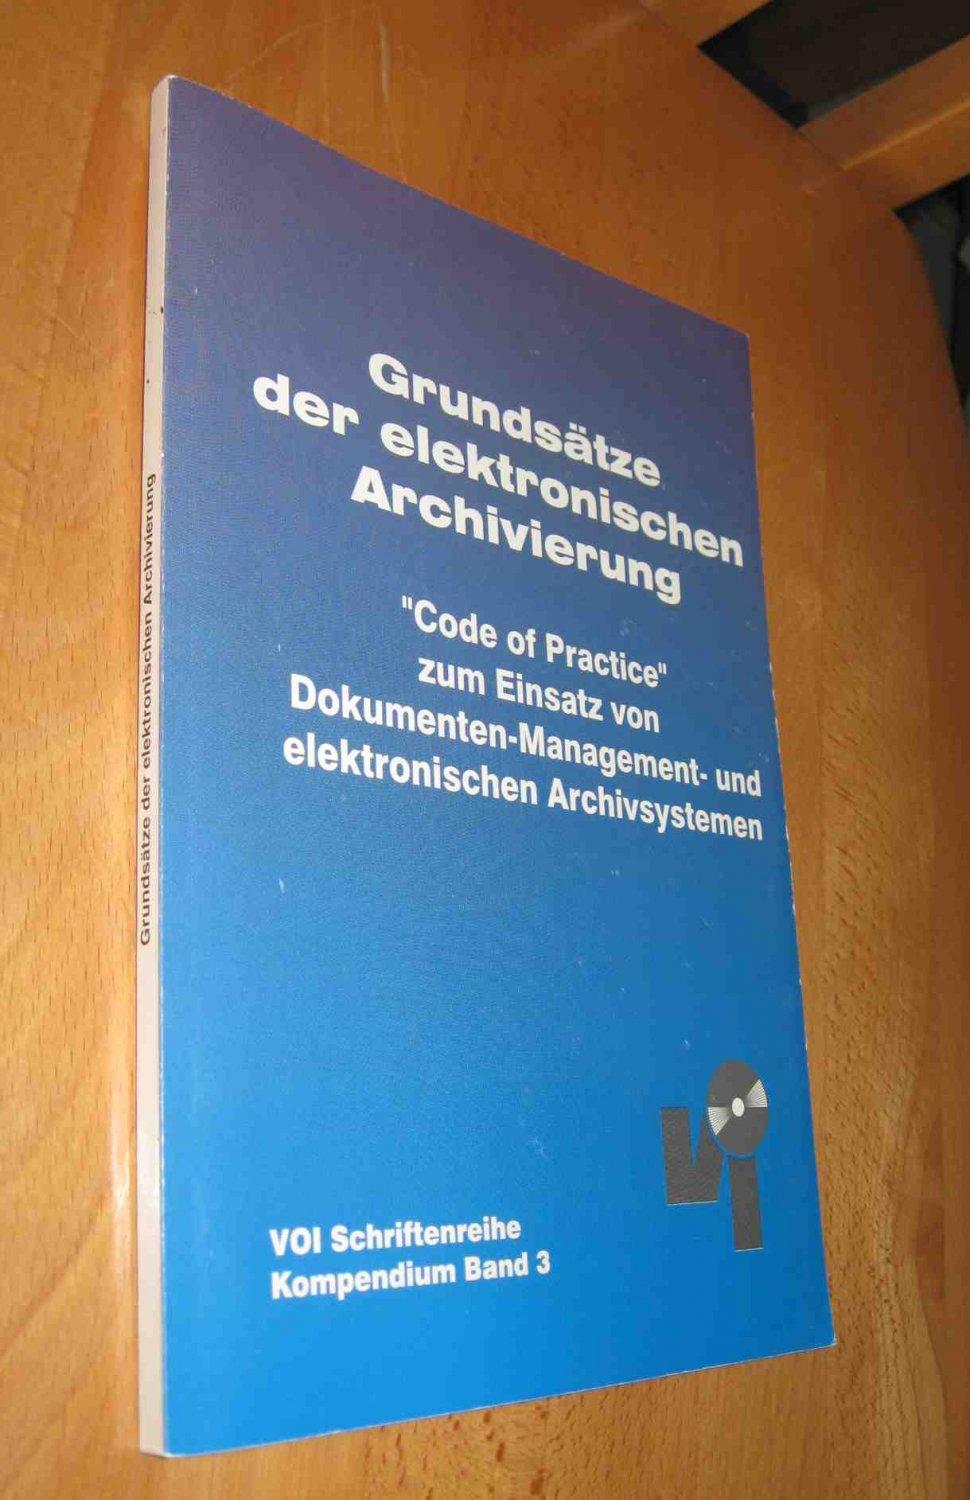 VOI-Kompendium / Grundsätze der elektronischen Archivierung - Code of Practice zur revisionssicheren Archivierung - Kampffmeyer, Ulrich / Rogalla, Jörg